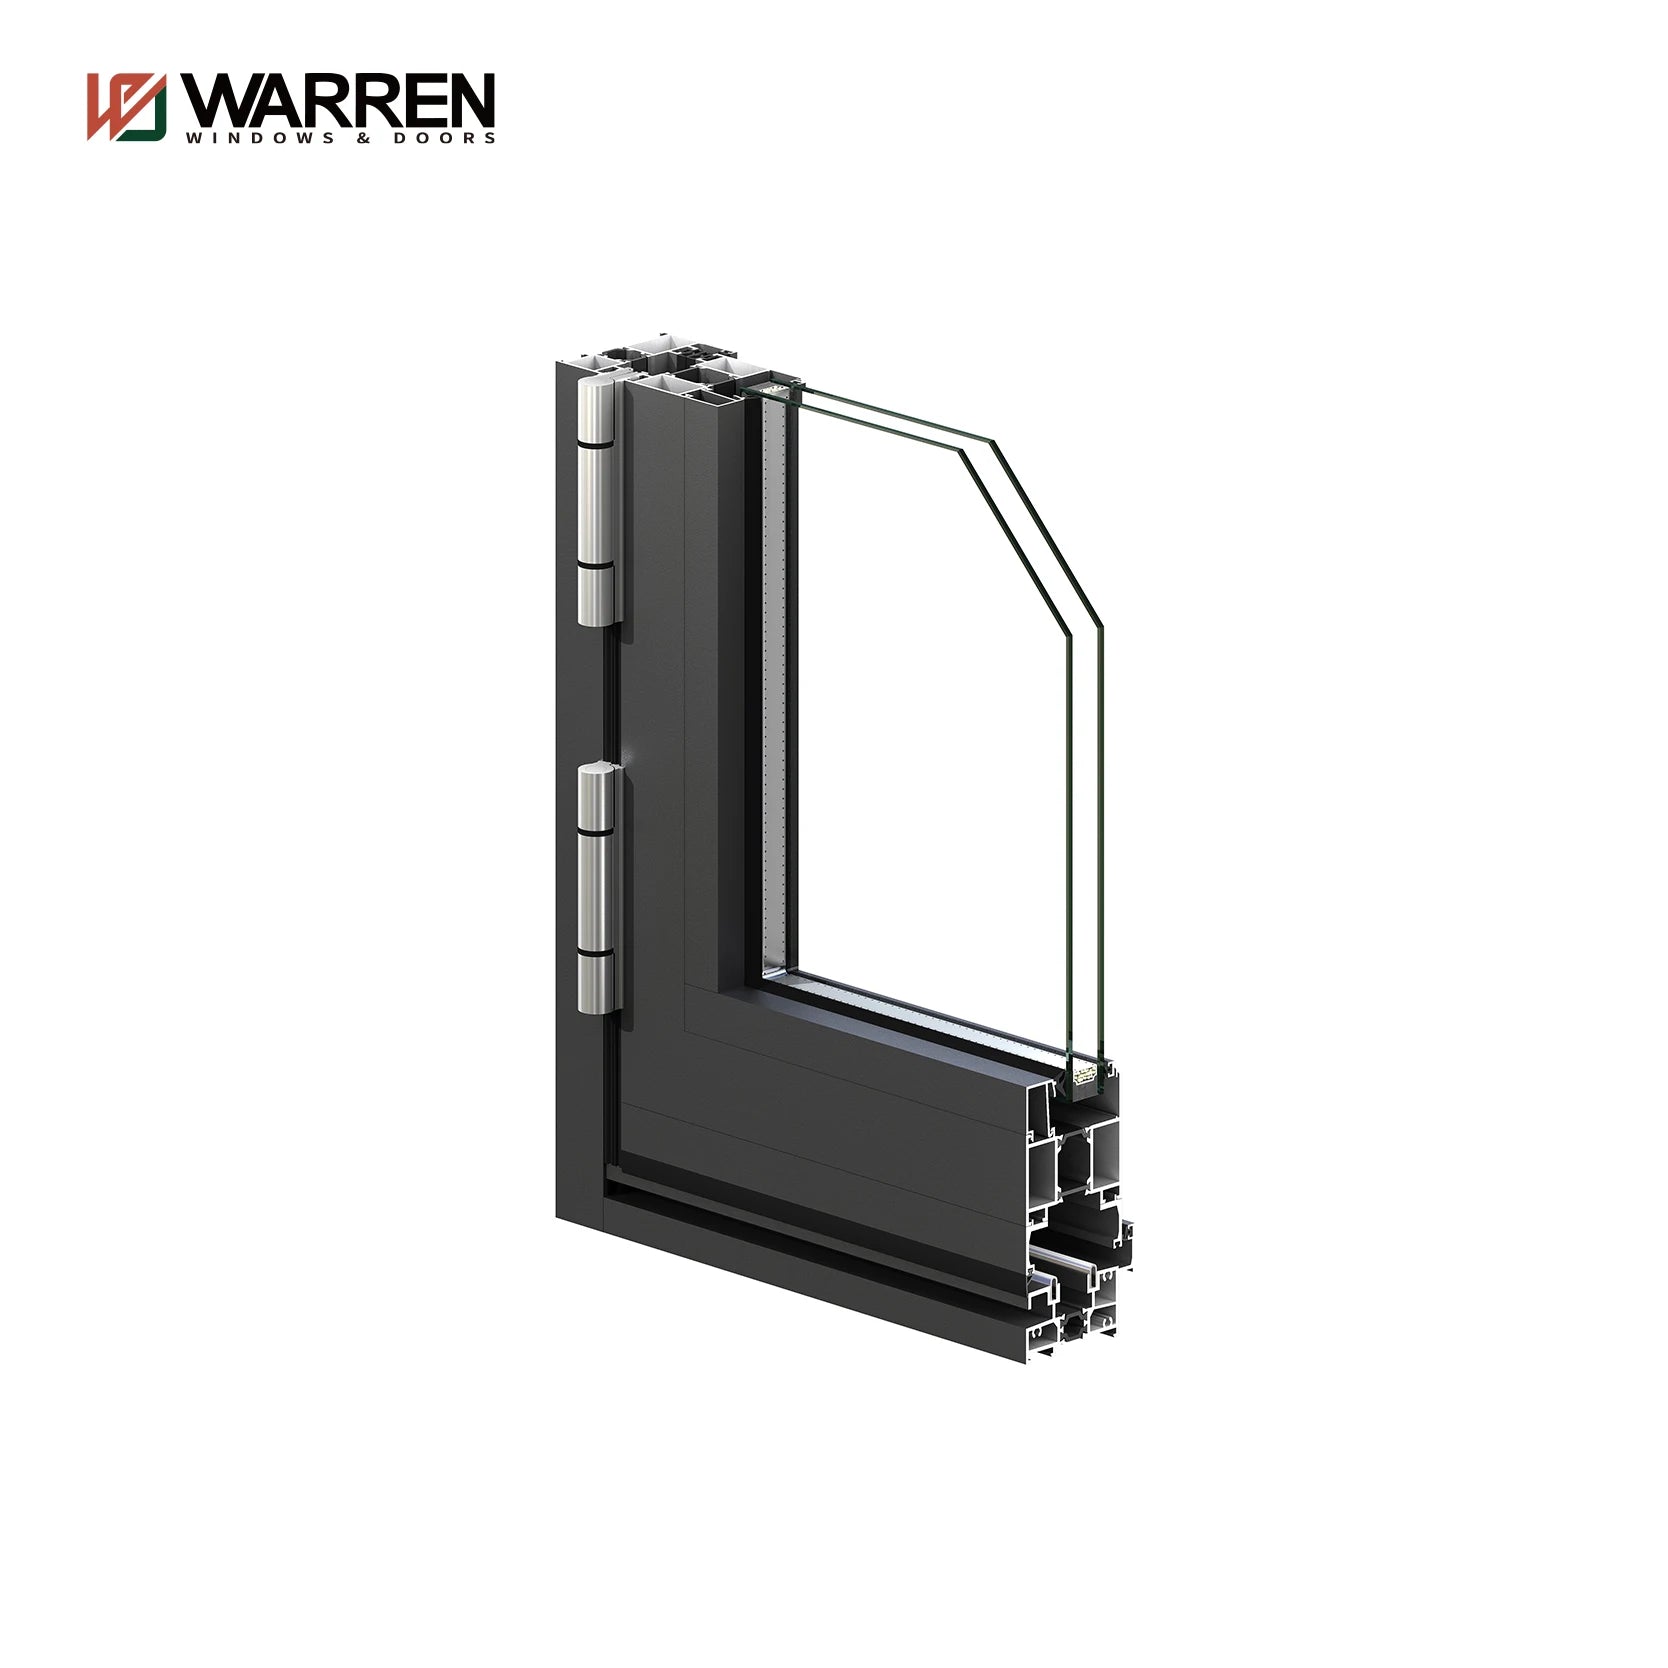 Warren 48x80 Bifold Doors Custom Width Bifold Doors 40 Inch Bifold Door Folding Glass Patio Aluminum